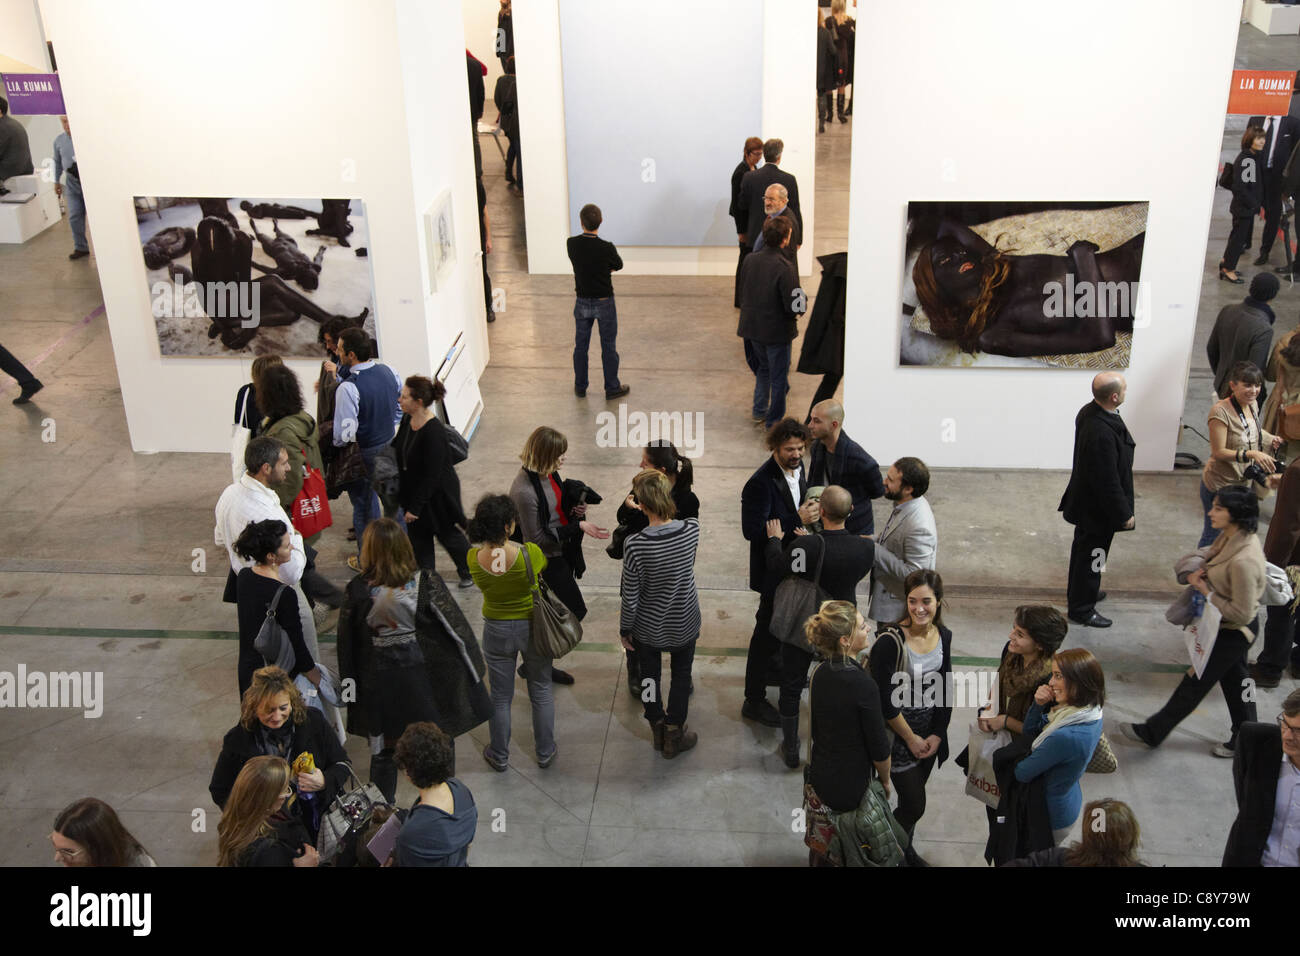 Artissima, Torino 2011, fiera internazionale di arte contemporanea Foto Stock